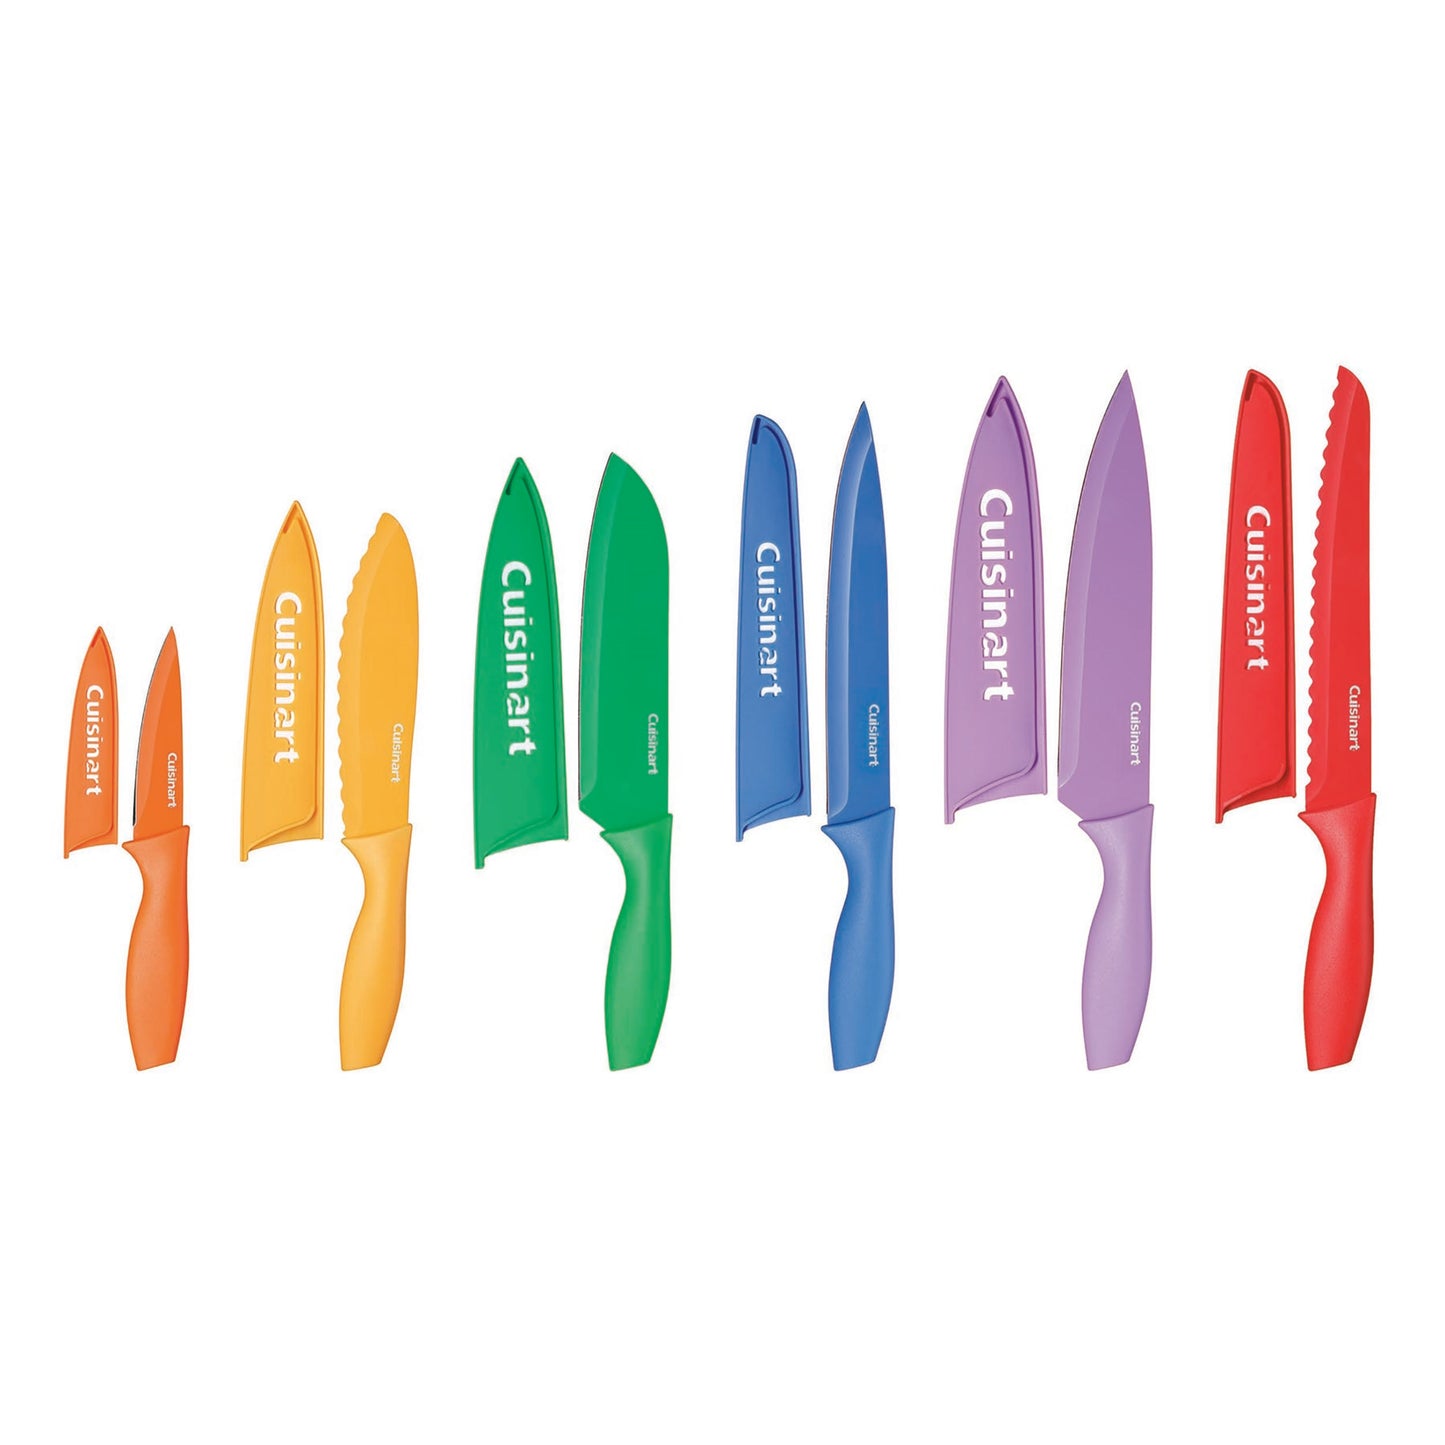 Knife Set - Advantage Color Blades 12 Piece Non-Stick